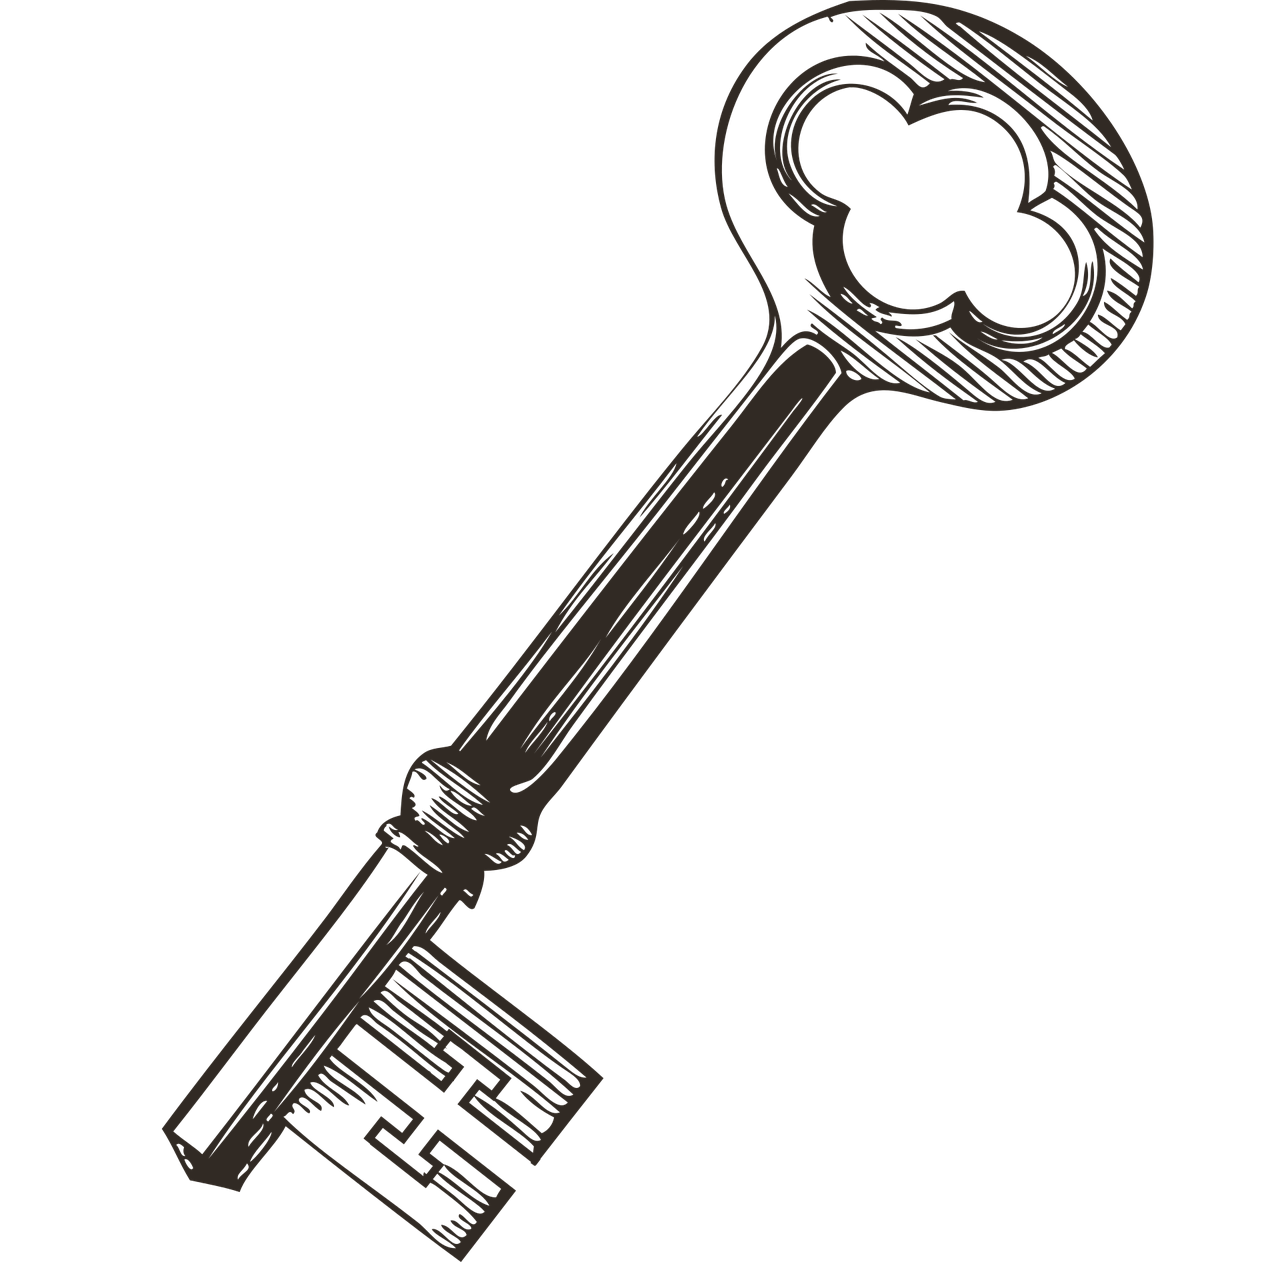 Ключ. Старинный ключ. Ключ векторное изображение. Простой ключ.